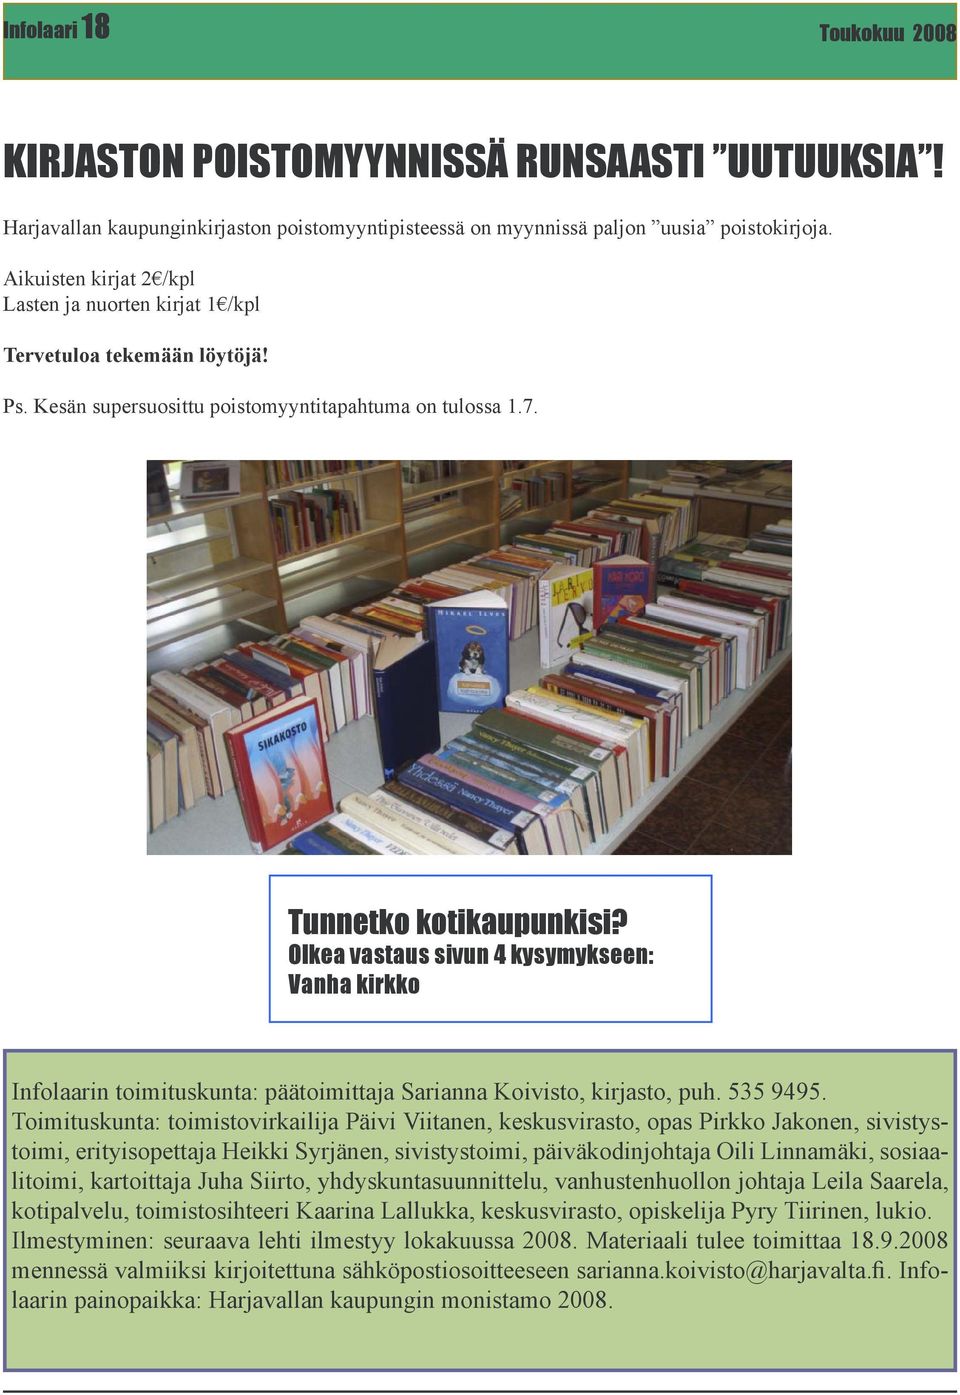 OIkea vastaus sivun 4 kysymykseen: Vanha kirkko Infolaarin toimituskunta: päätoimittaja Sarianna Koivisto, kirjasto, puh. 535 9495.